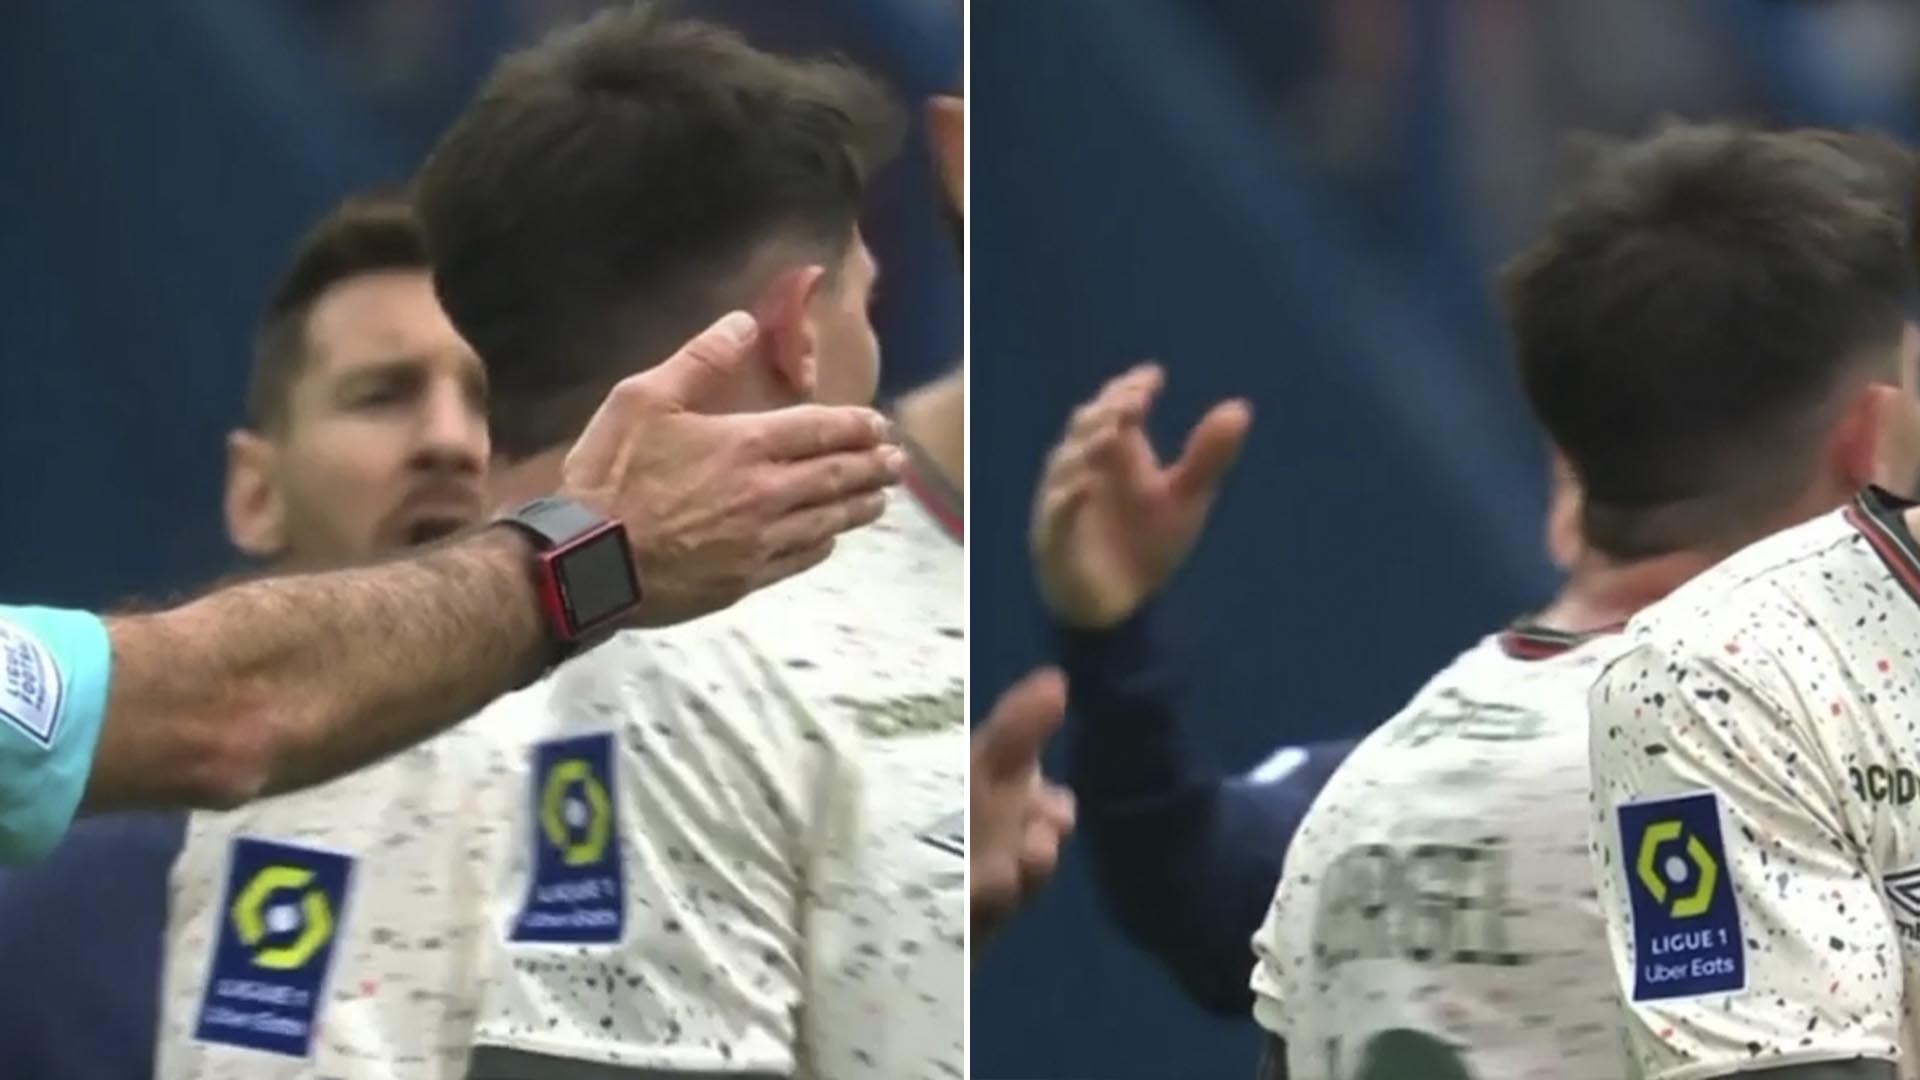 El efecto “bofetada” de Messi contra un jugador del Lorient en el partido del PSG que se viralizó